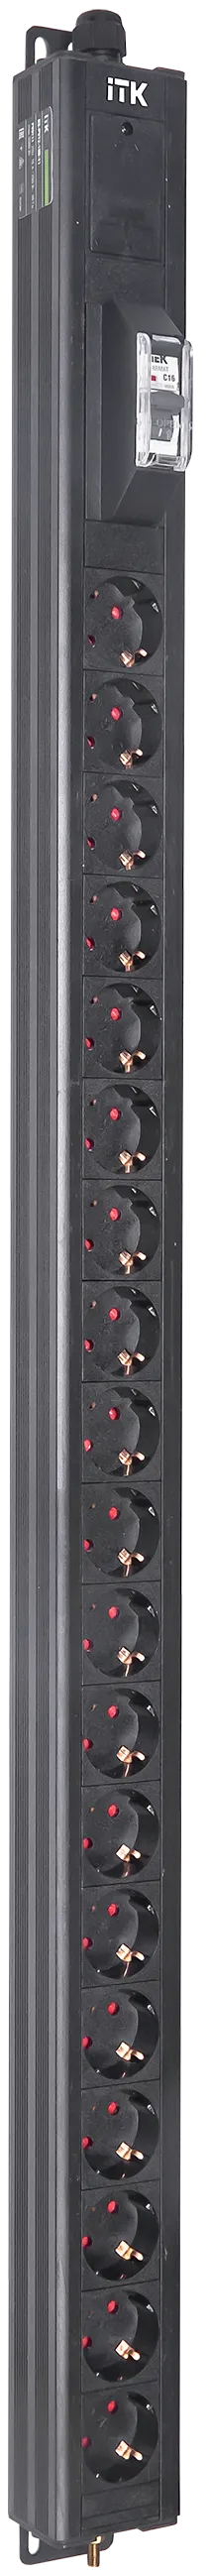 Вертикальный однотипный блок распределения питания PDU ITK включает в себя 19 розеток Schuko. PDU ITK изготавливается из высококачественных термостойких материалов и пластмасс, оснащается 2,6 метровым кабелем электропитания с вилкой Schuko. PDU ITK прекрасно справляется с задачей по электроснабжению сетевого оборудования в шкафах и стойках, а также с требованием защиты от токов короткого замыкания и перенапряжения. PDU ITK соответствует российским и международным стандартам качества и устанавливается с помощью кронштейнов, при этом положение кронштейнов можно менять, либо безынструментальным методом при помощи монтажных штифтов.